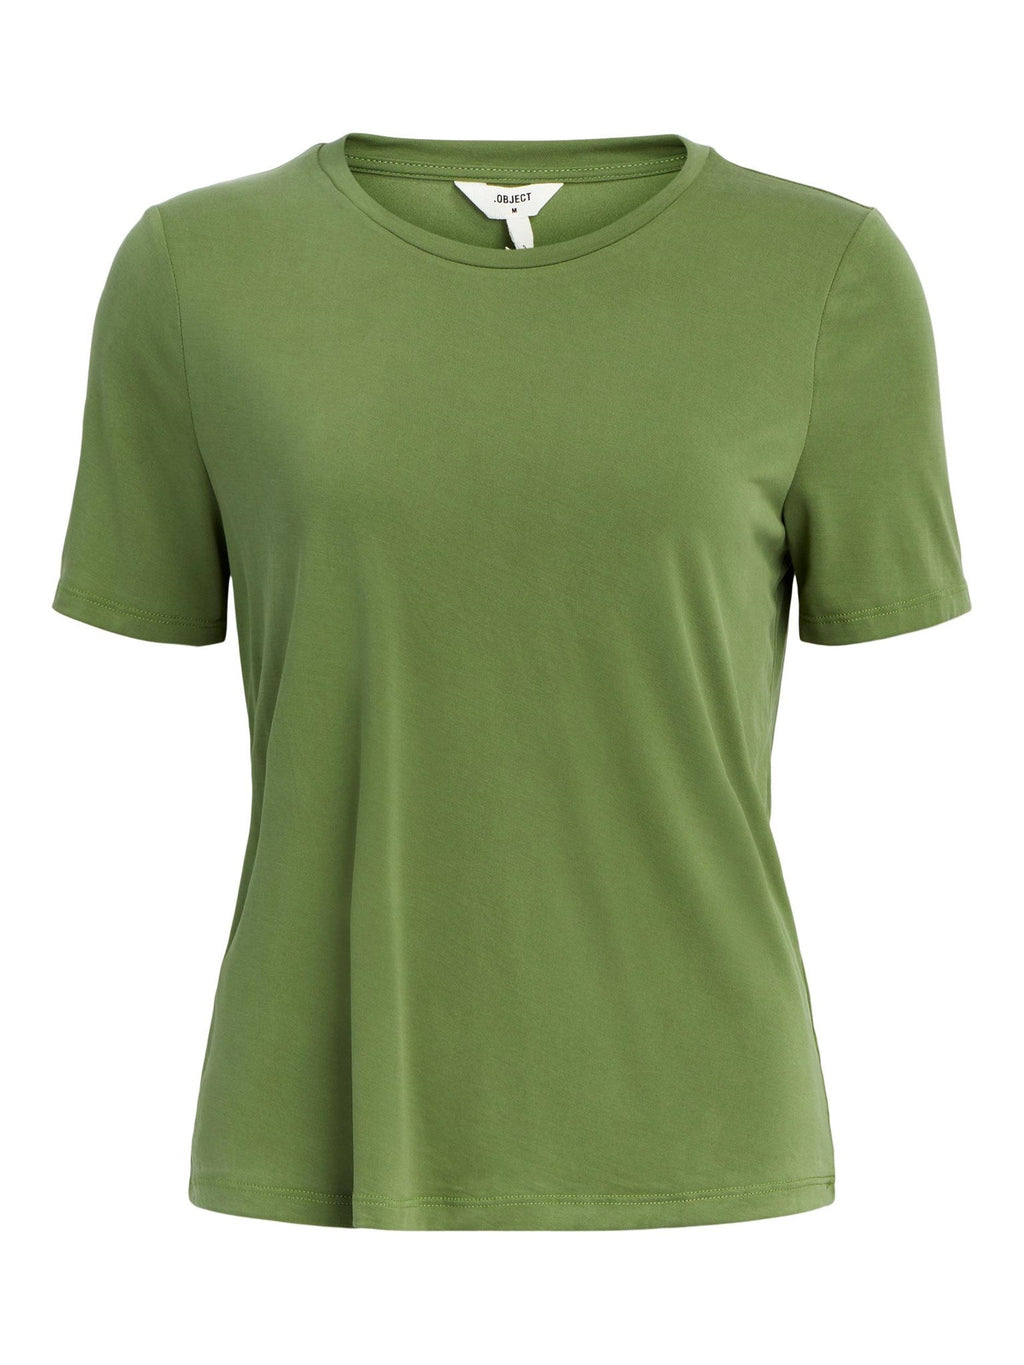 Jannie T恤 - 葡萄园绿色